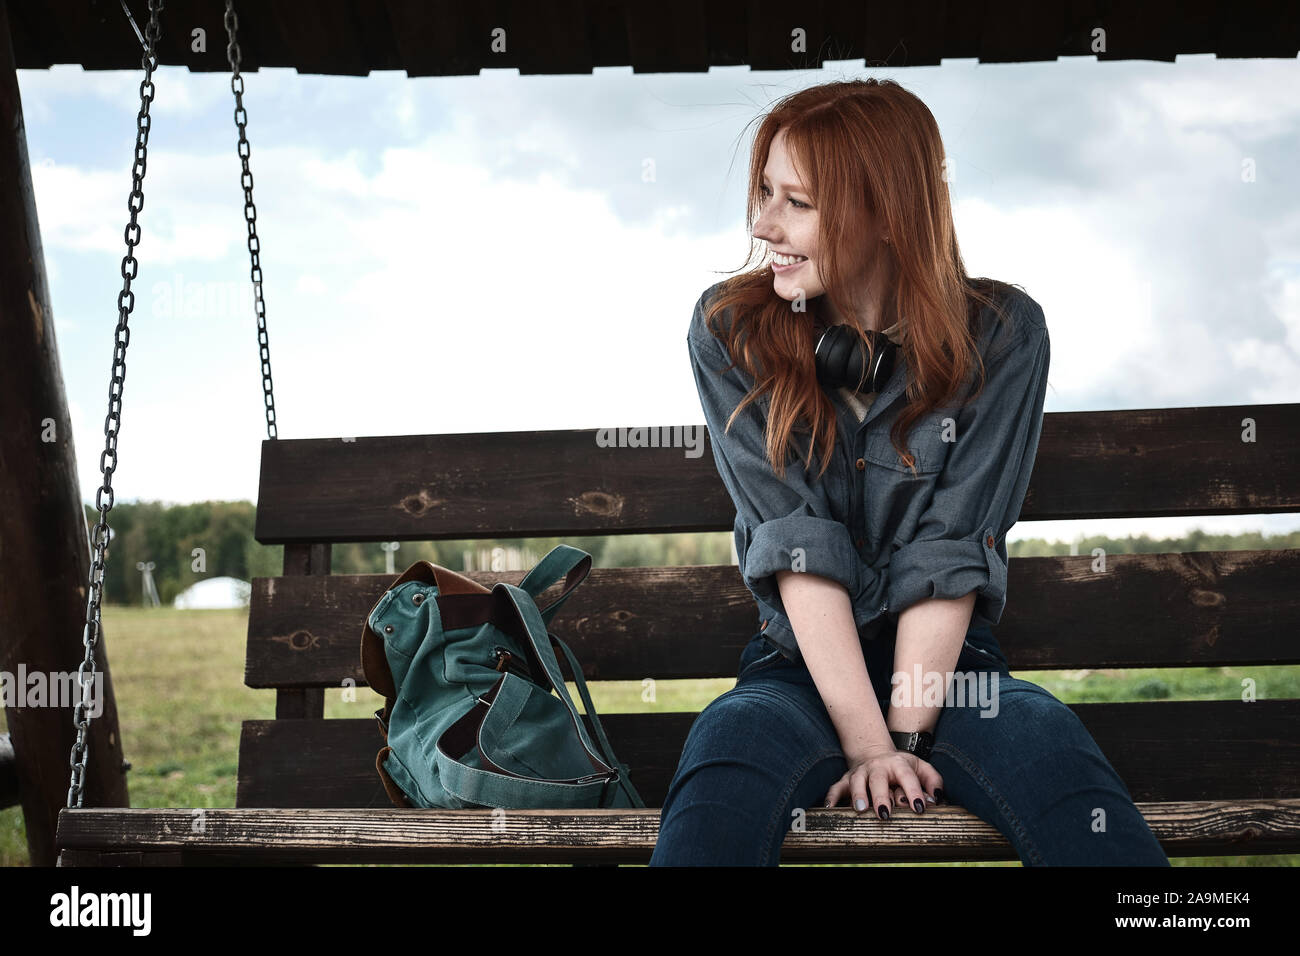 Jeune fille rousse dans un jeans shirt siège avec un sac à dos sur une balançoire en bois banc, se penchant en avant et souriante, à la recherche sur le côté. Banque D'Images